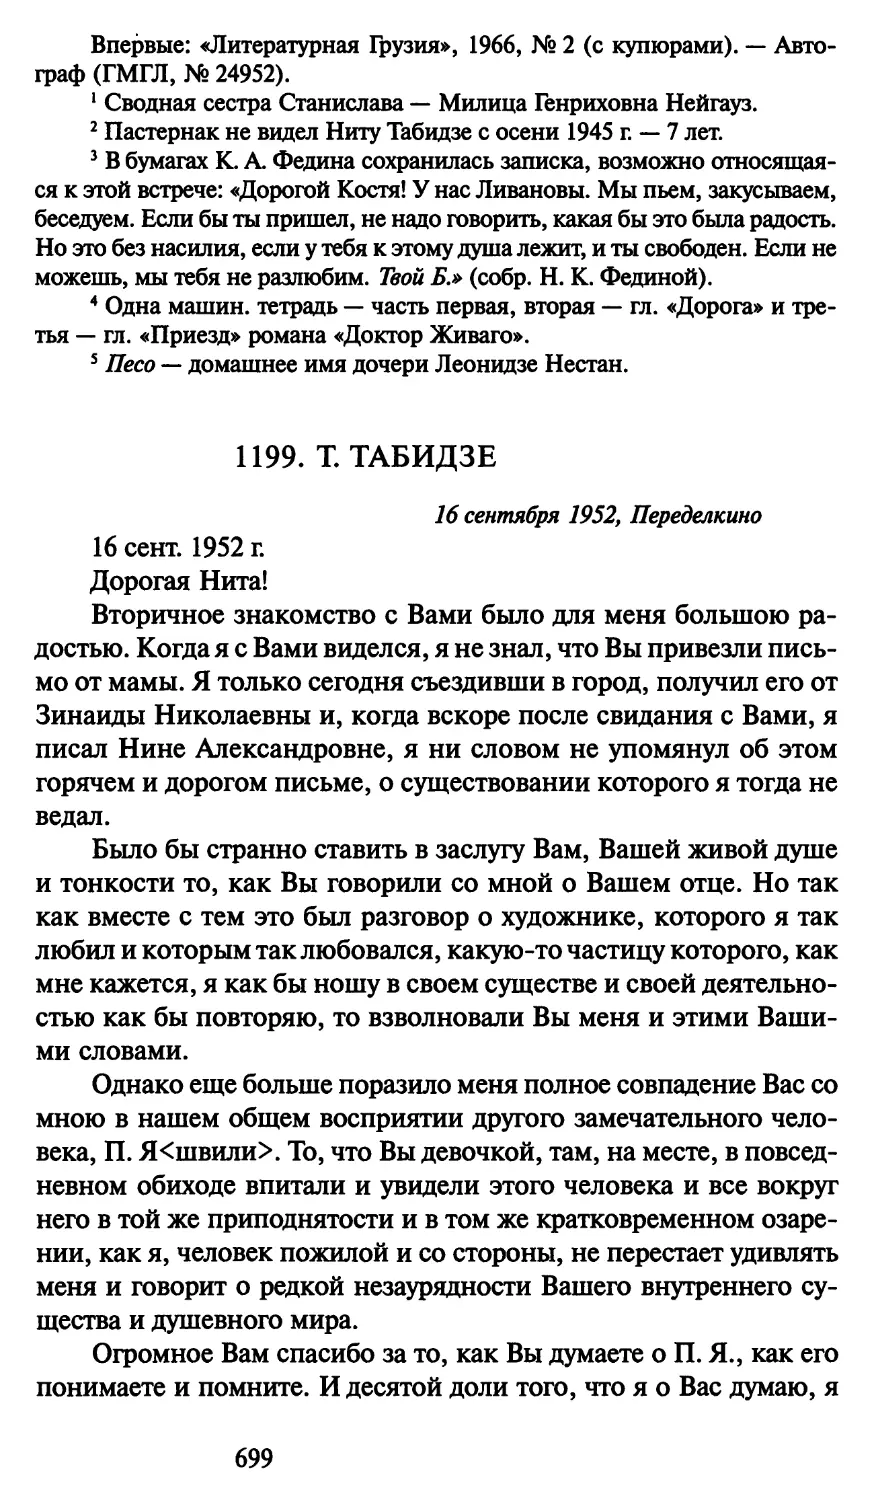 1199. Т. Табидзе 16 сентября 1952